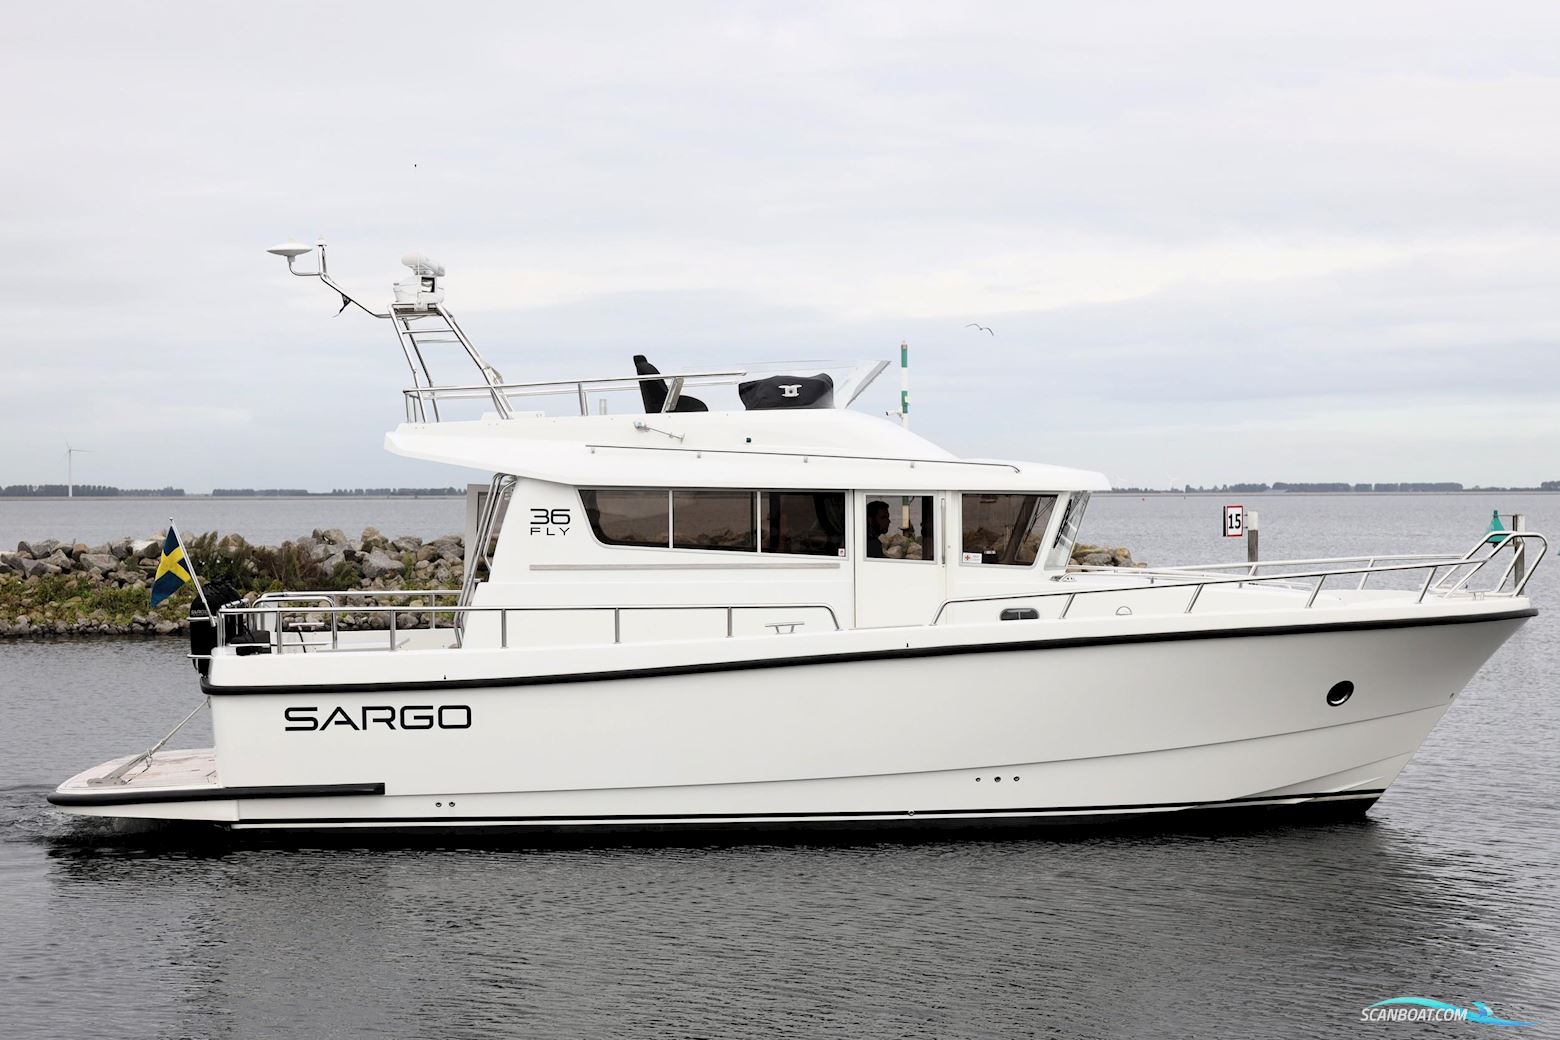 Sargo 36 Fly Motorbåt 2013, med Volvo Penta motor, Holland